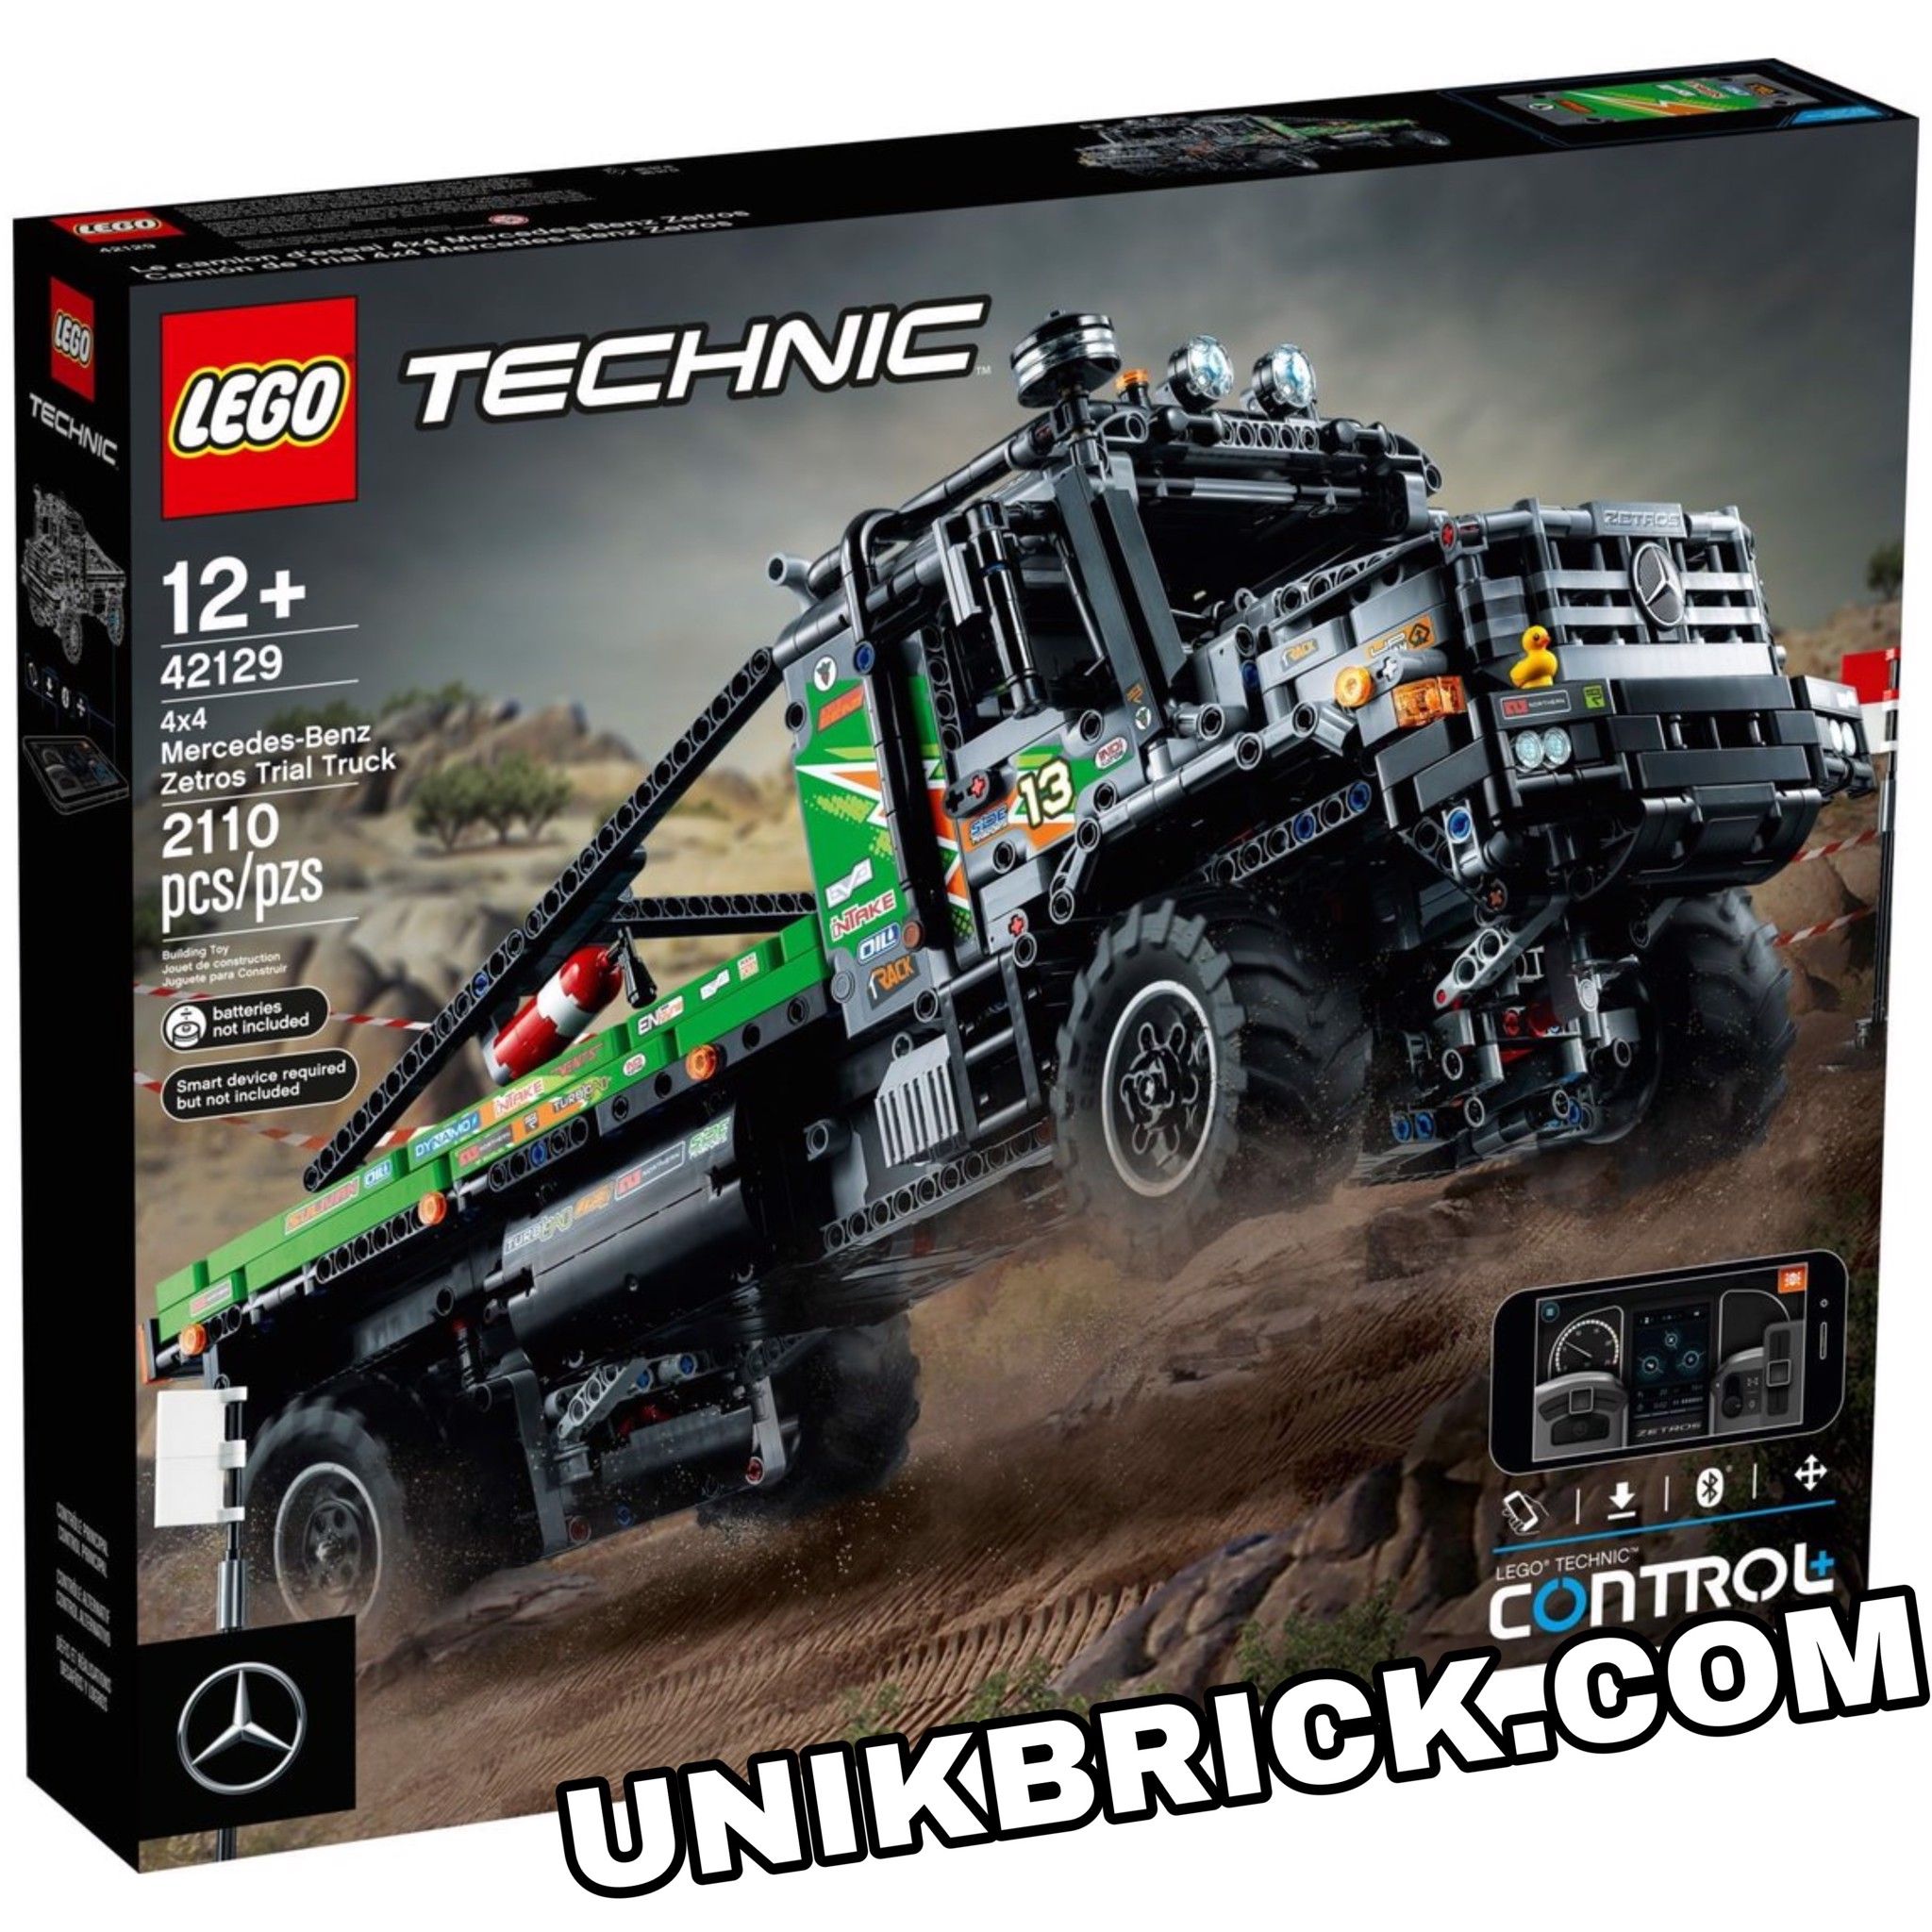 [HÀNG ĐẶT/ ORDER] LEGO Technic 42129 4x4 Mercedes-Benz Zetros Trial Truck